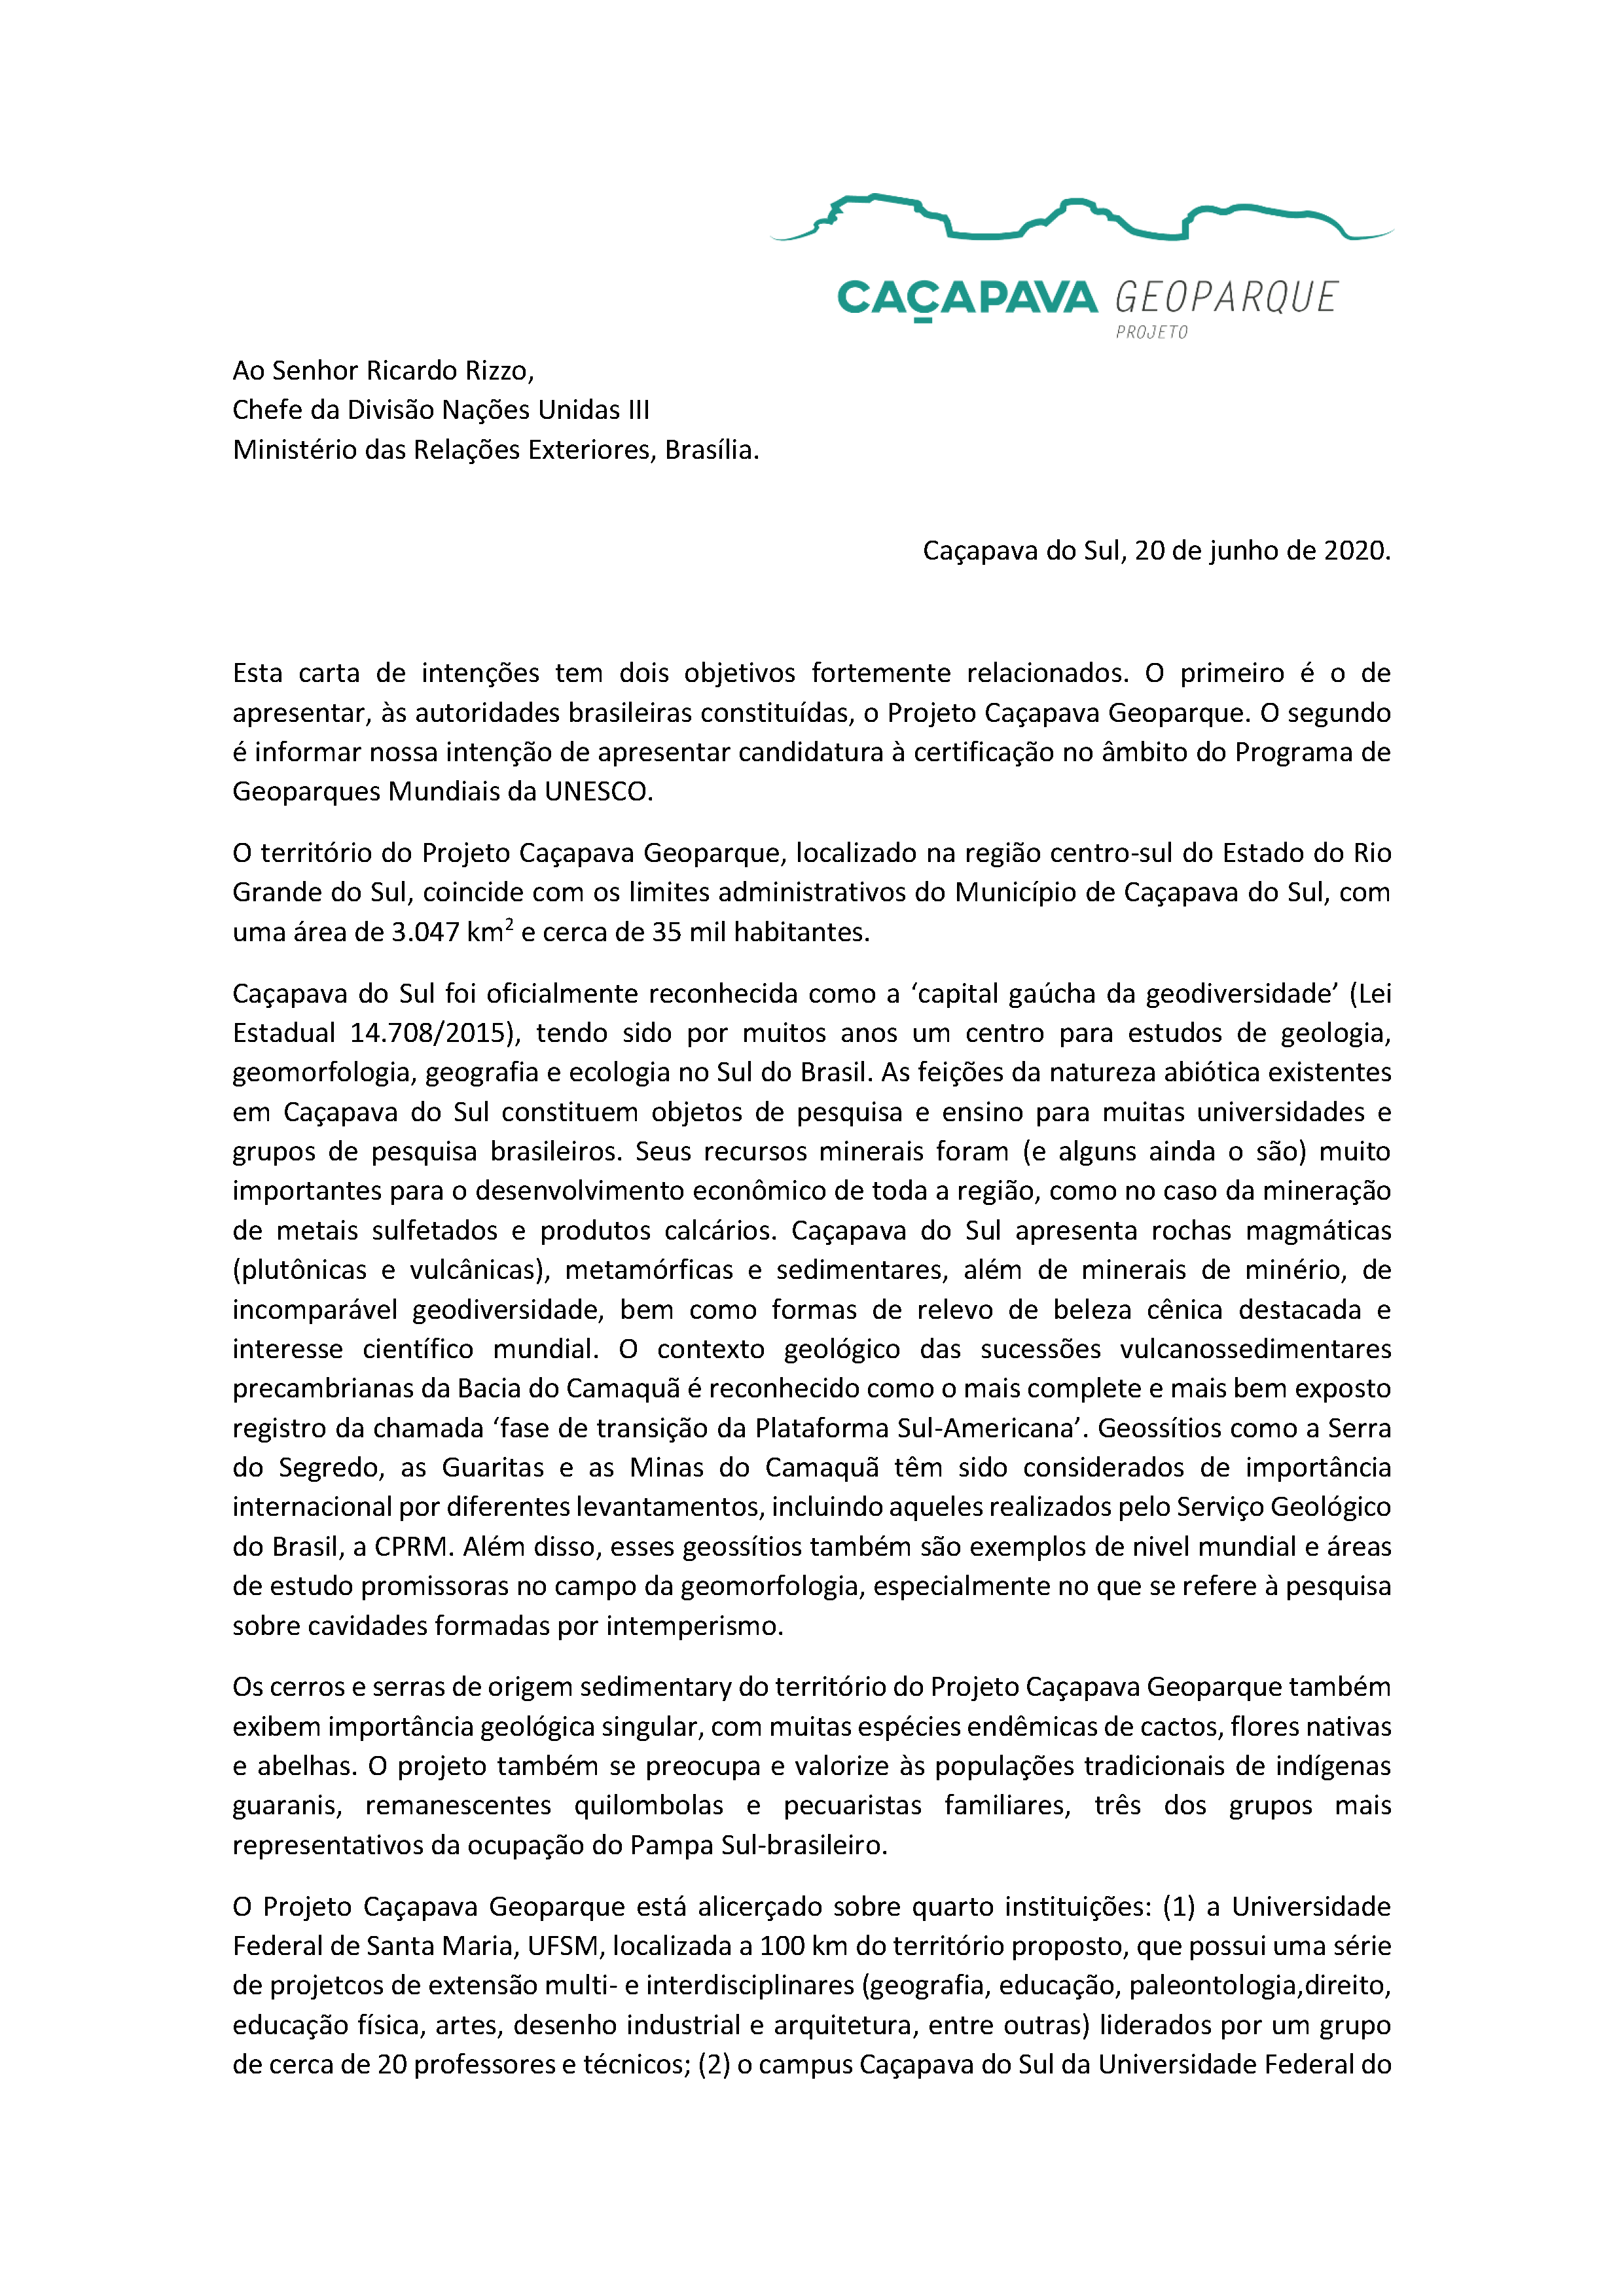 Primeira página da carta de intenções apresentada à Unesco.